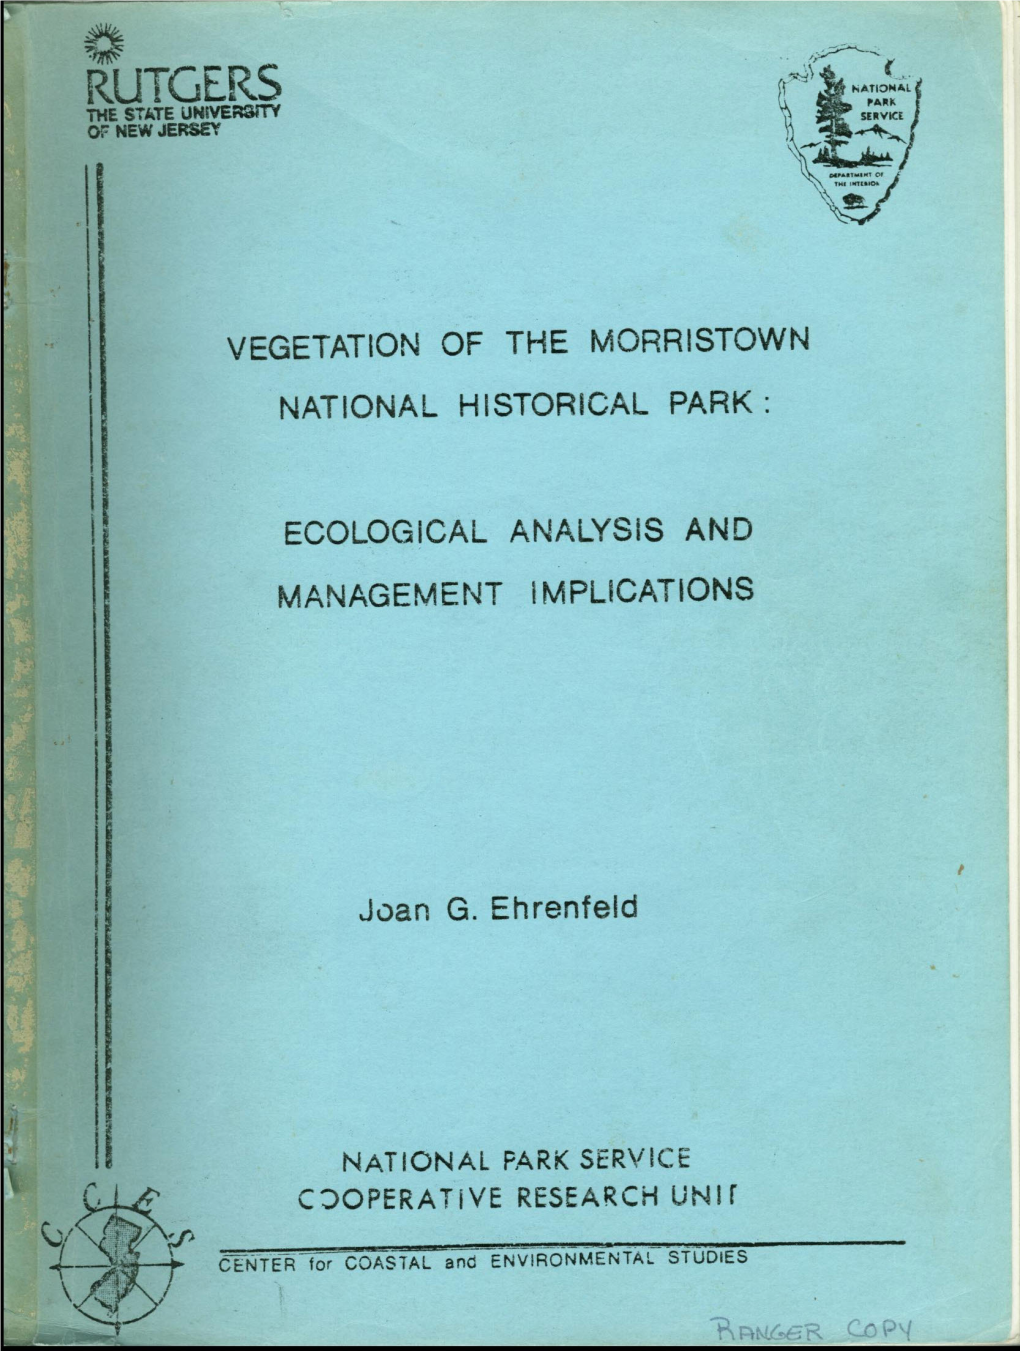 Vegetation of the Morristown National Historical Park